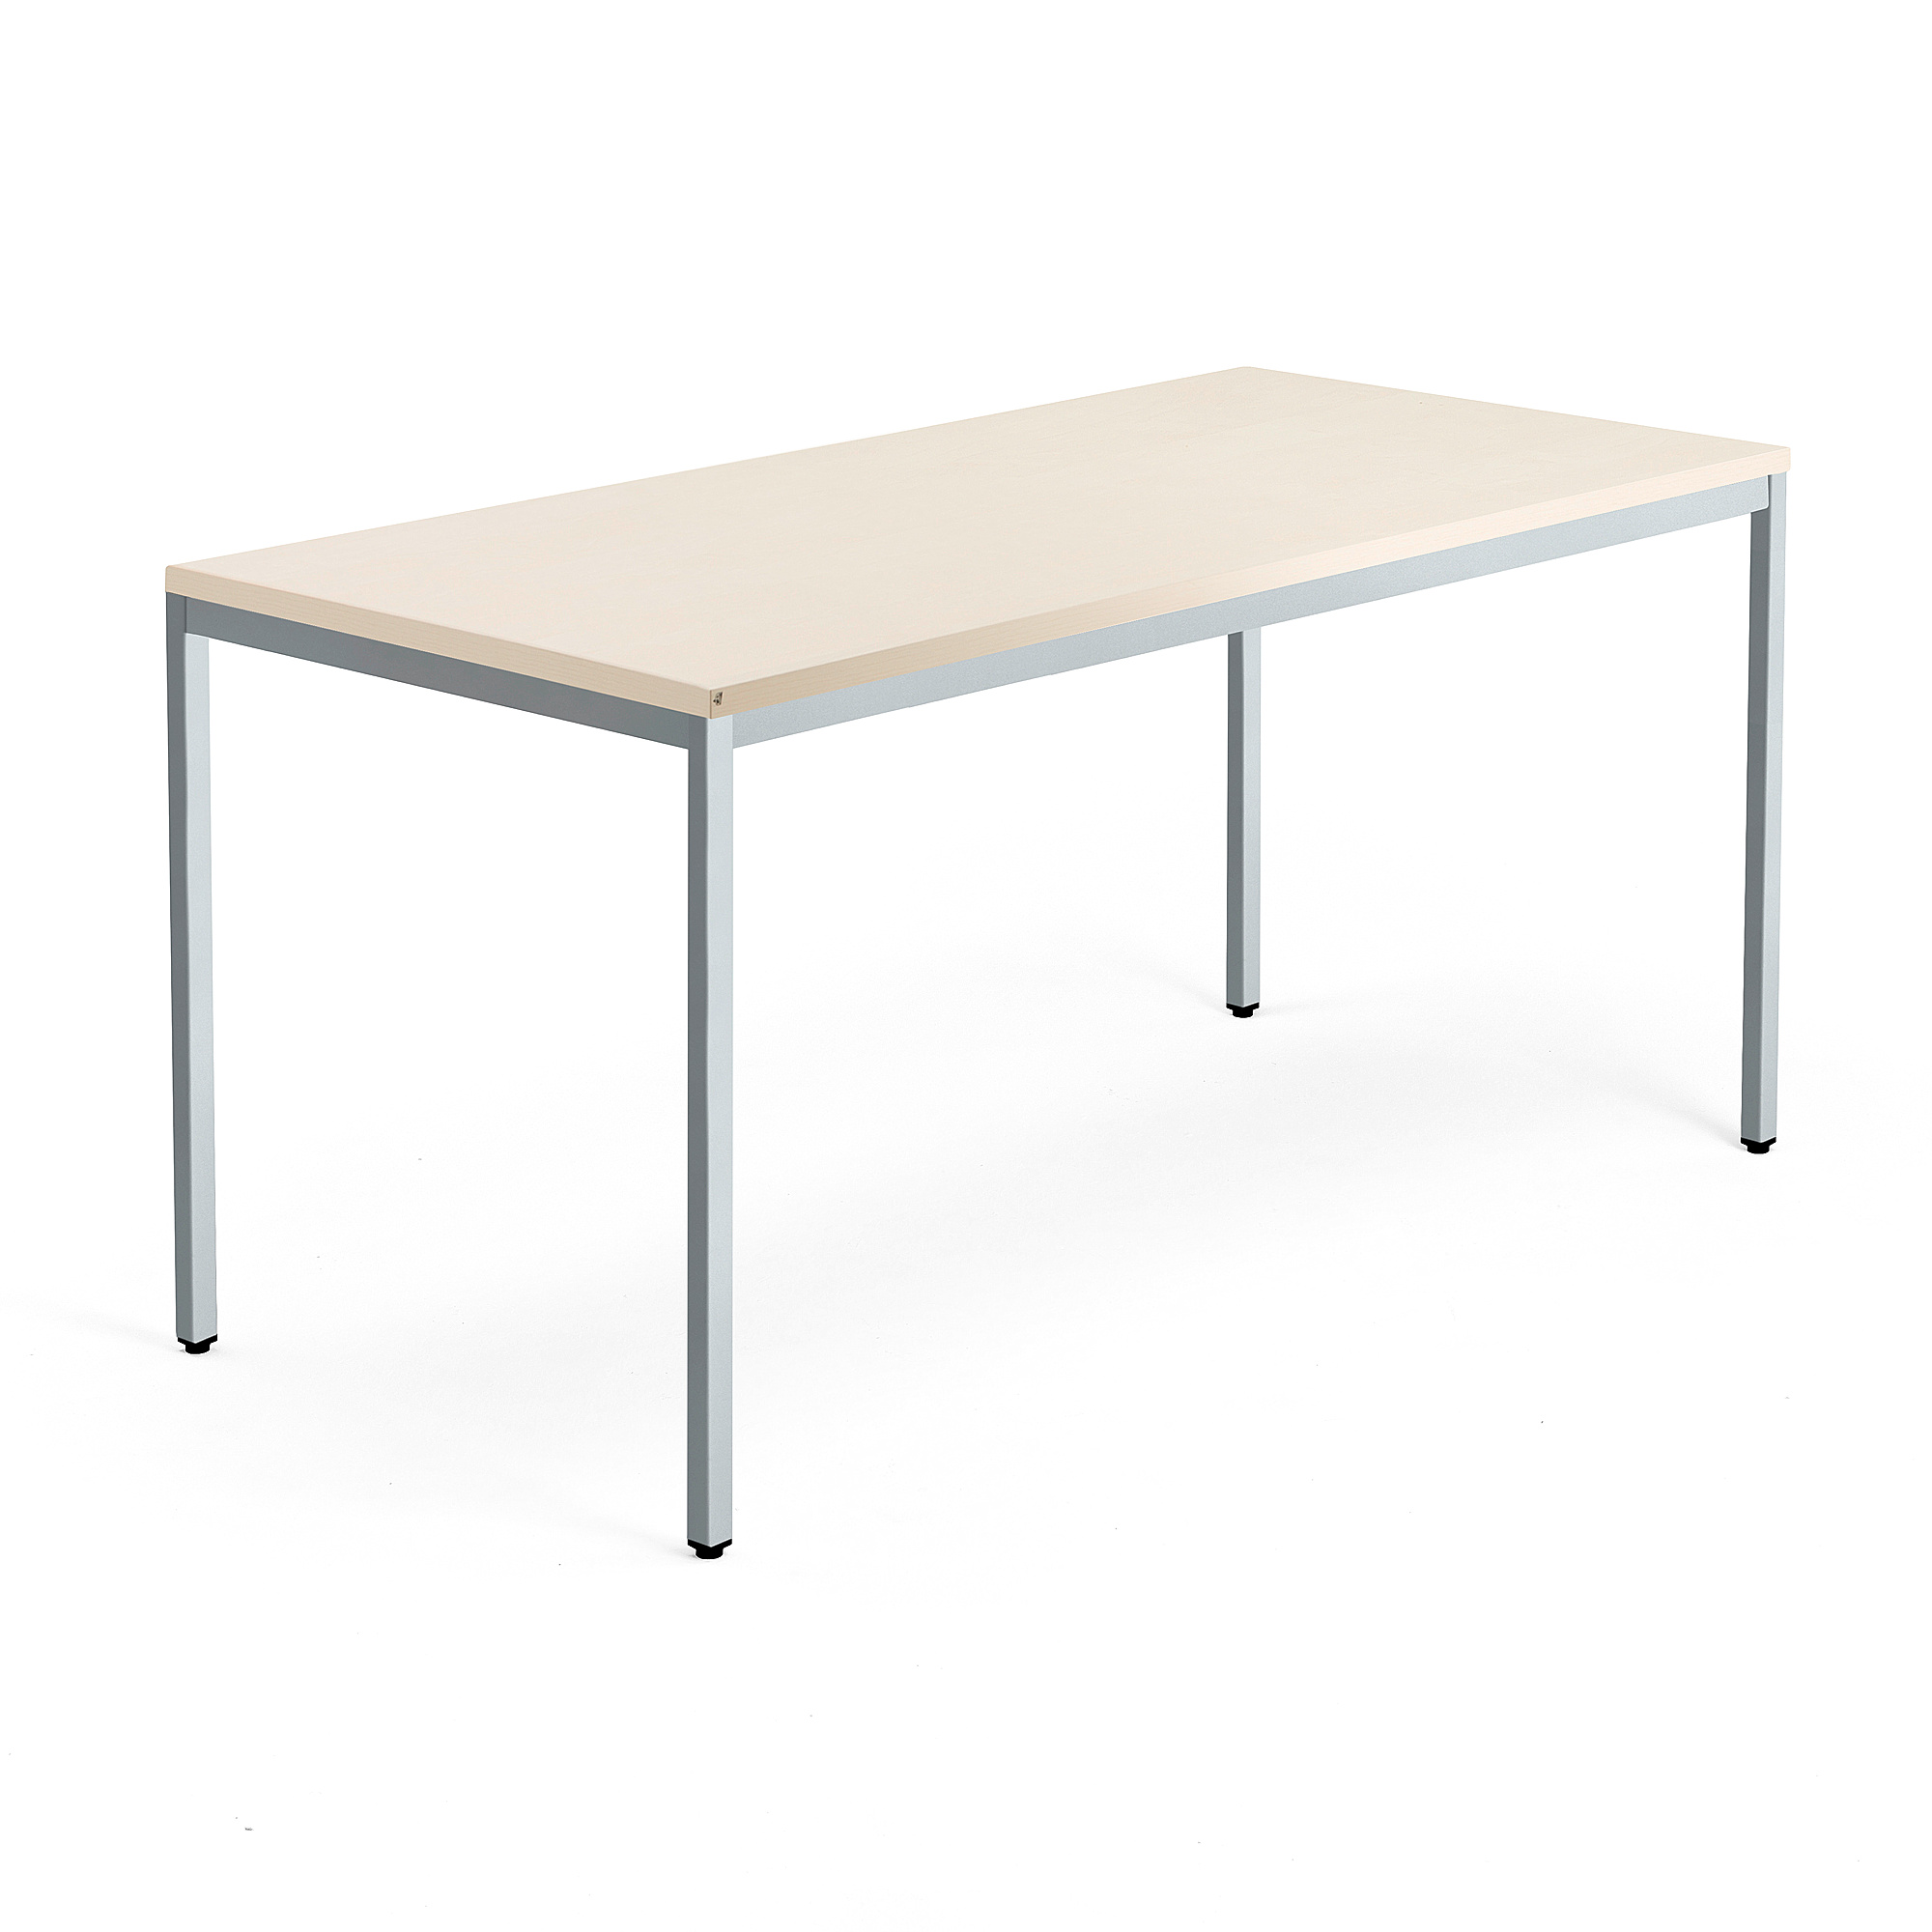 Psací stůl MODULUS, 4 nohy, 1600x800 mm, stříbrný rám, bříza